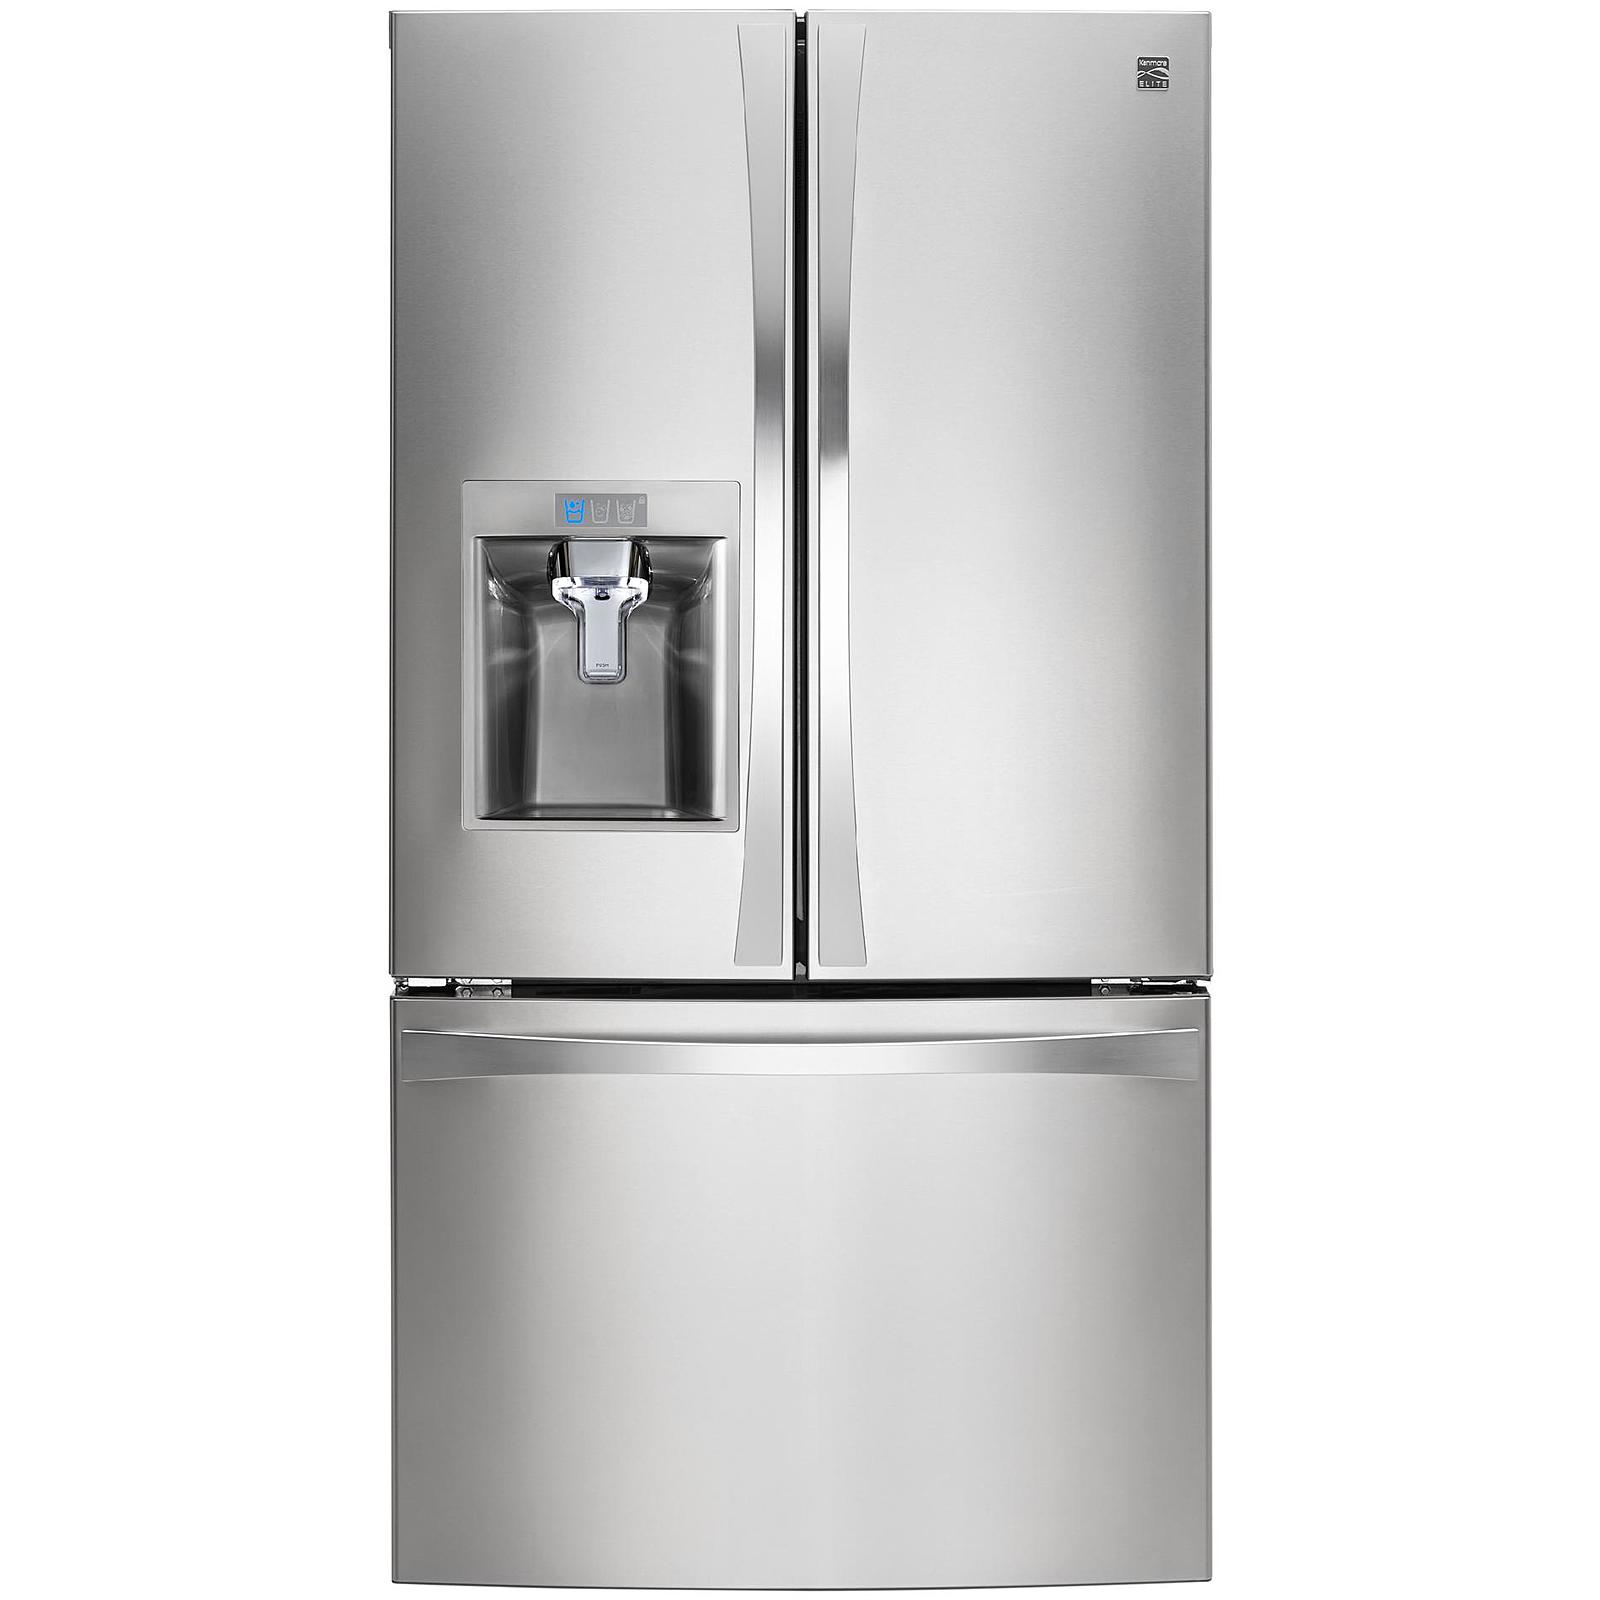 Sears kenmore elite refrigerator repair manual